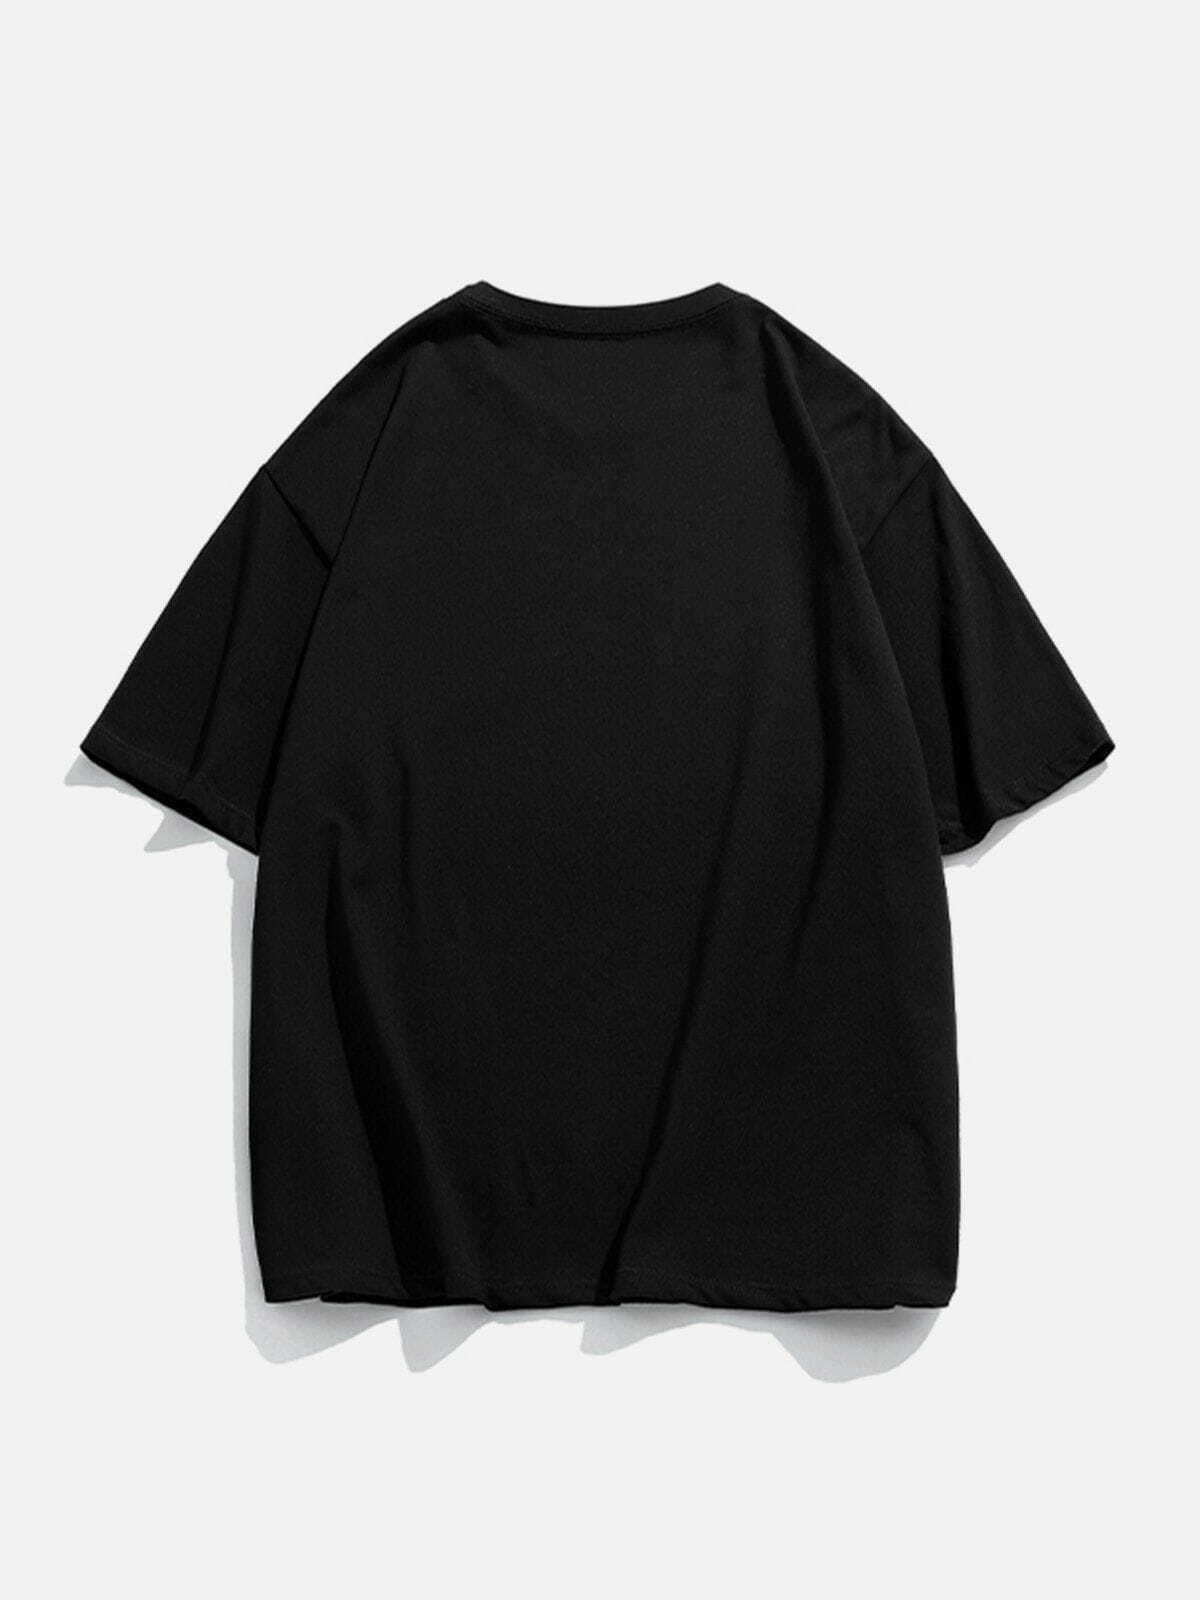 retro mountain tee edgy  vibrant y2k streetwear tshirt 3248